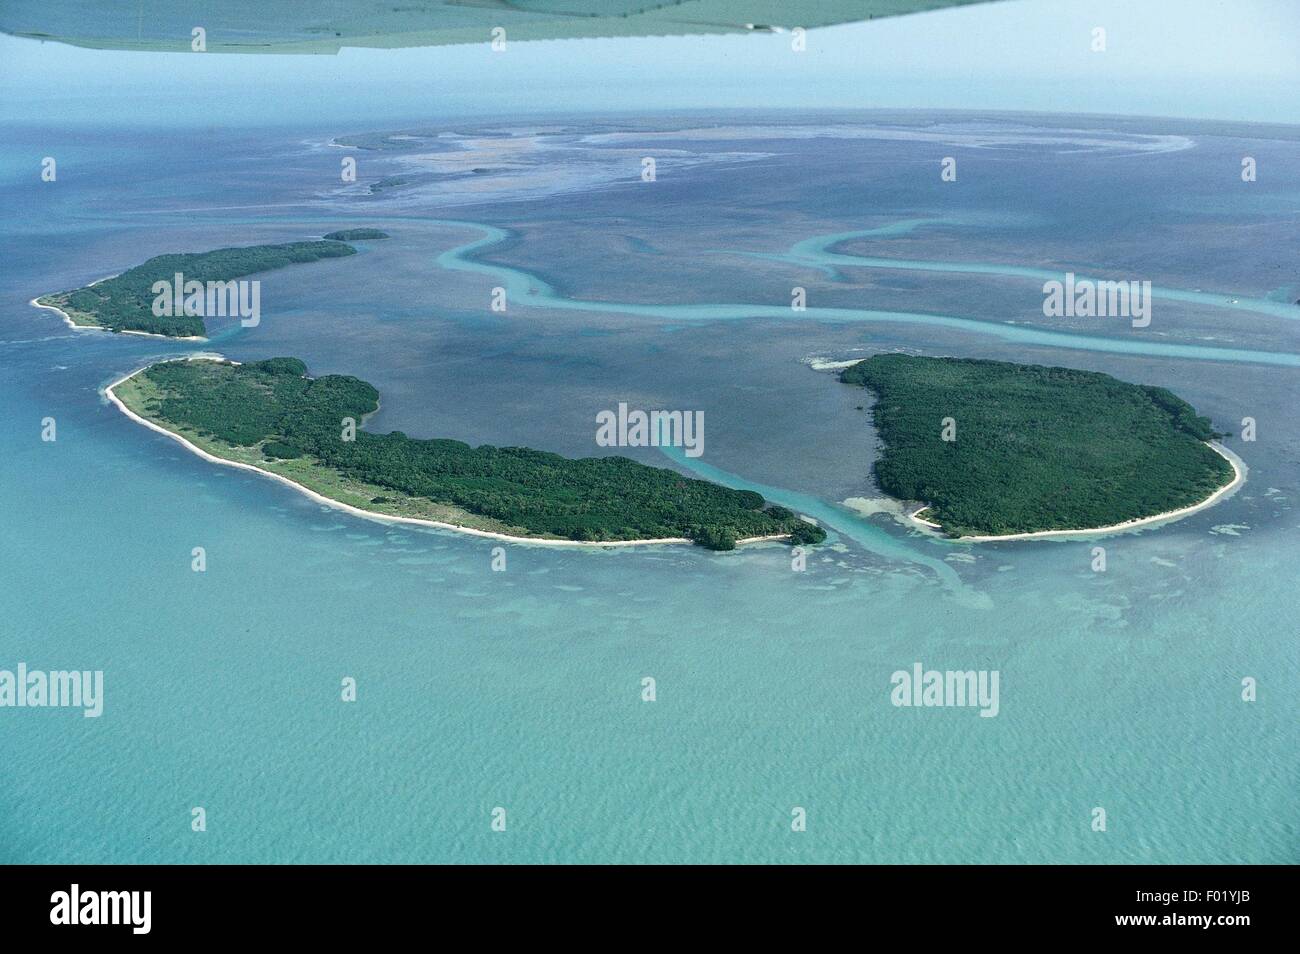 Vue aérienne de l'archipel des Marquises - Polynésie française (France) Banque D'Images